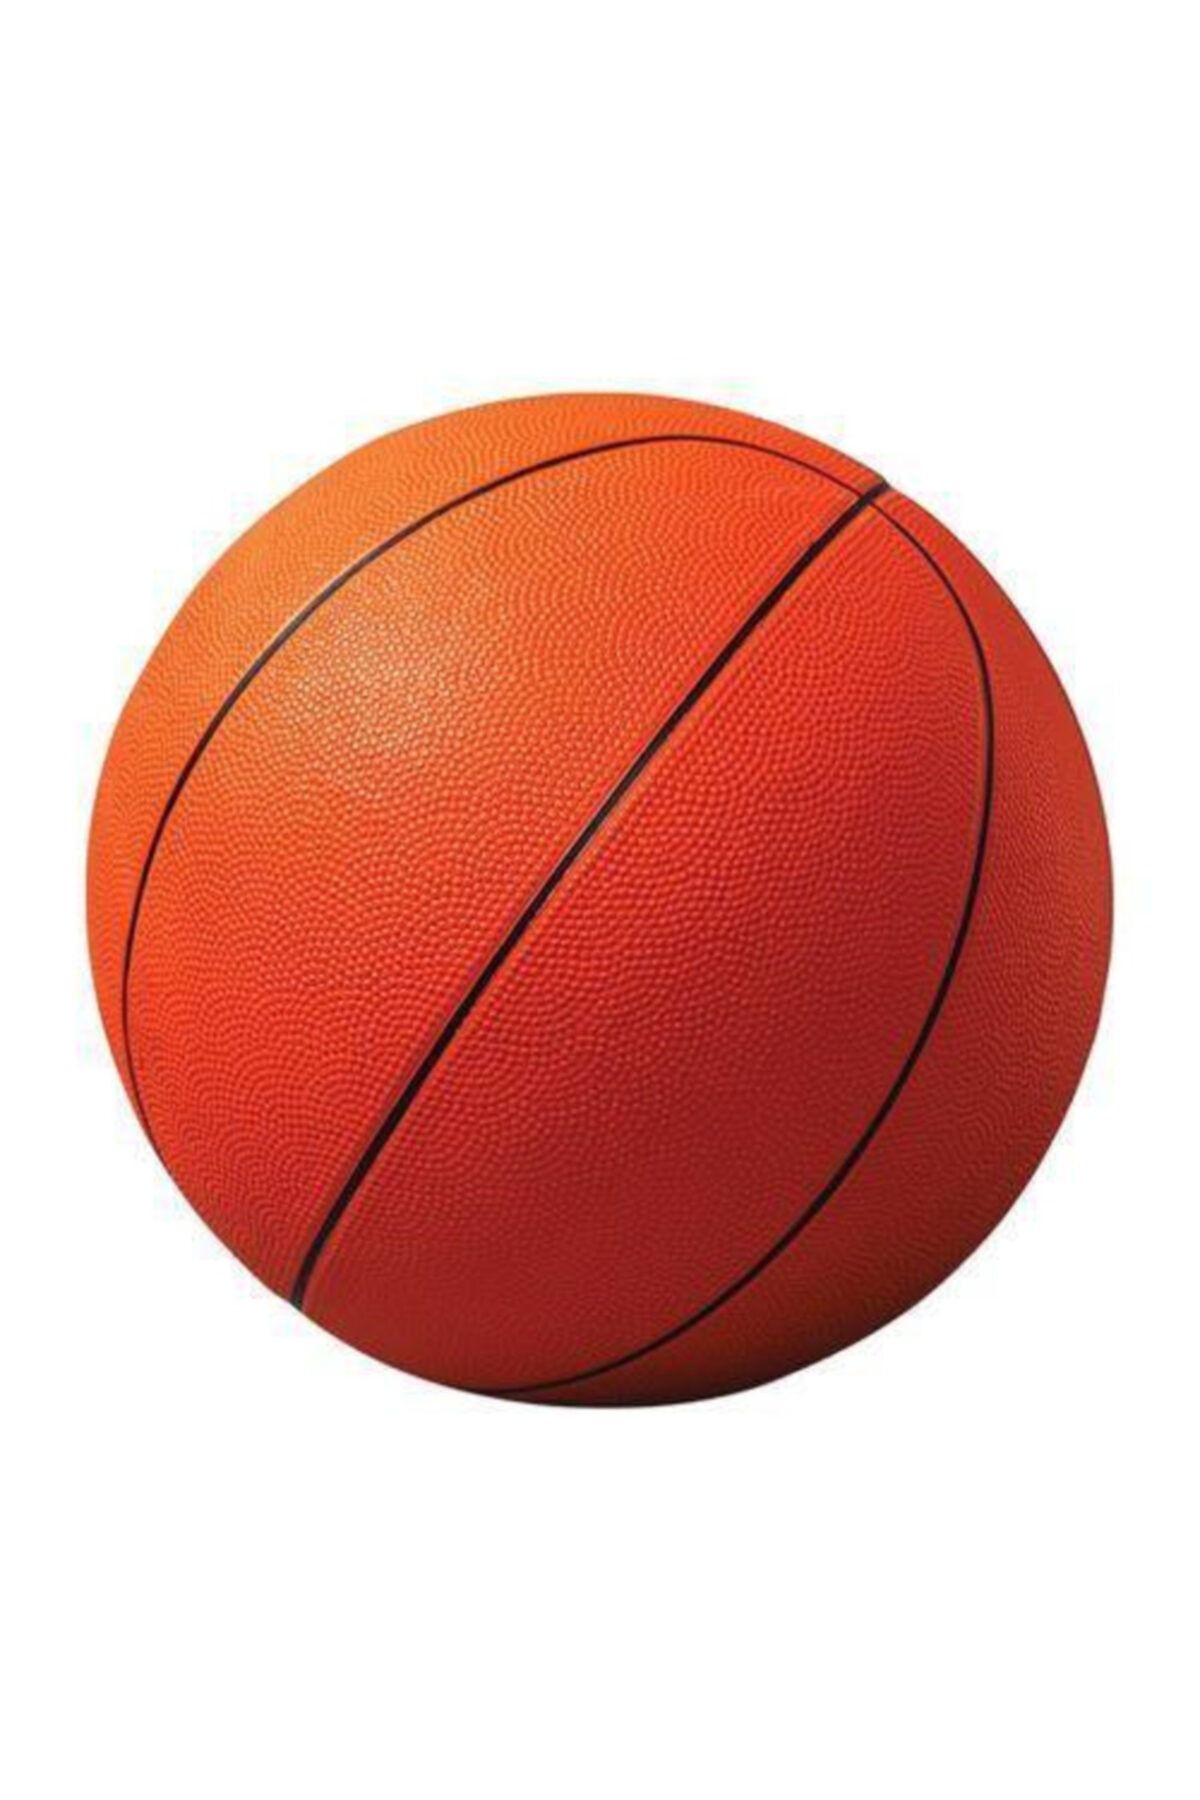 FırsatYeri Çocuklar Için Kauçuk Profesyonel Boy Basketbol Topu